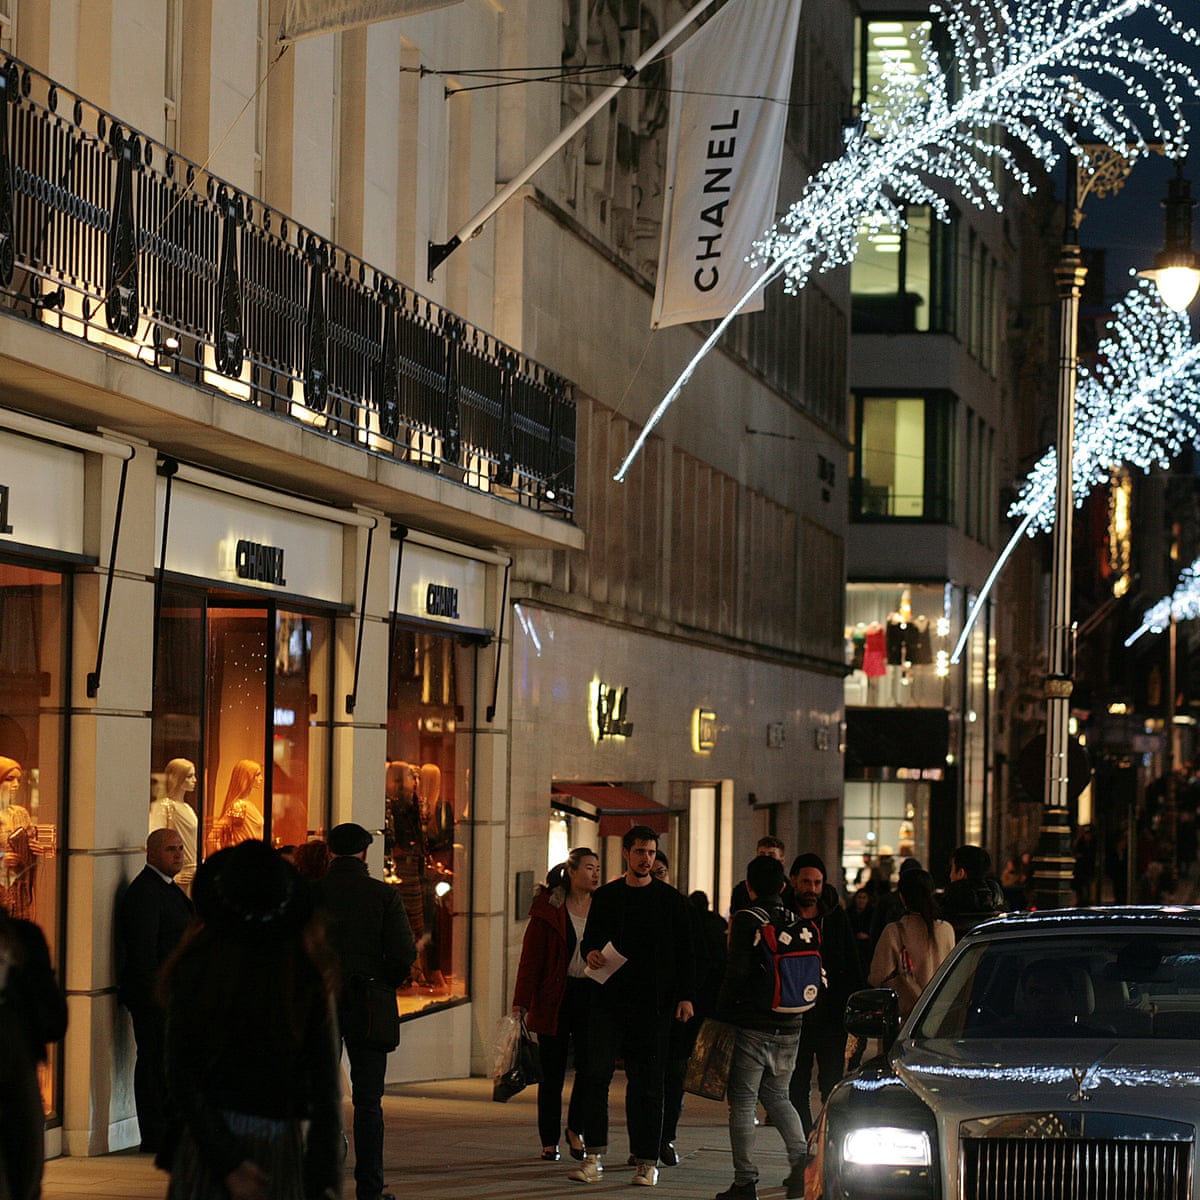 bond street london